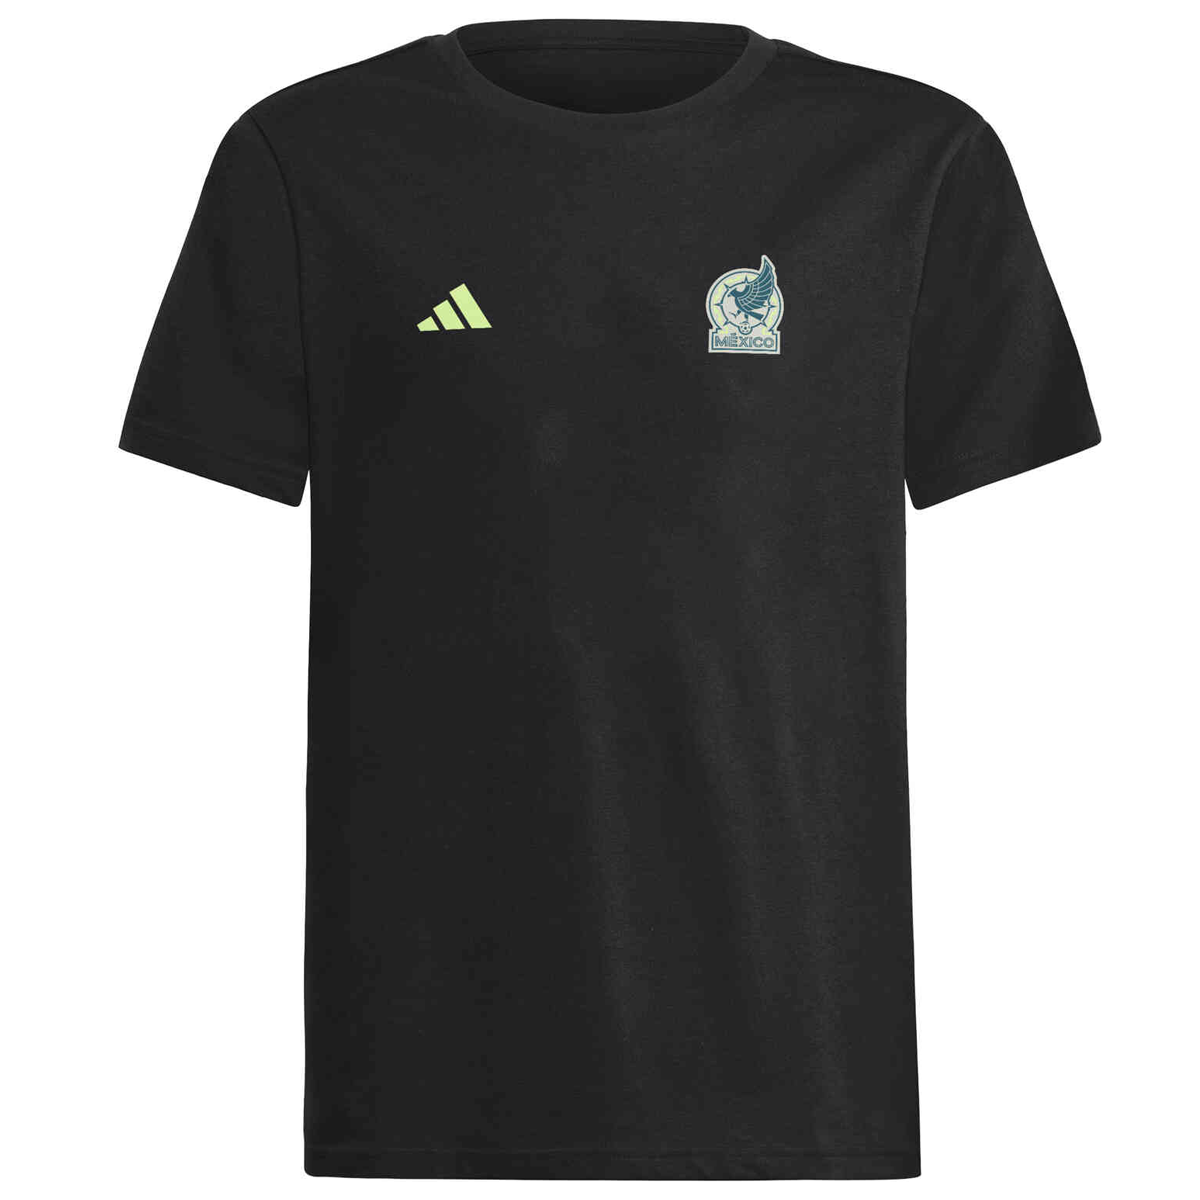 Adidas Soccer Shirts